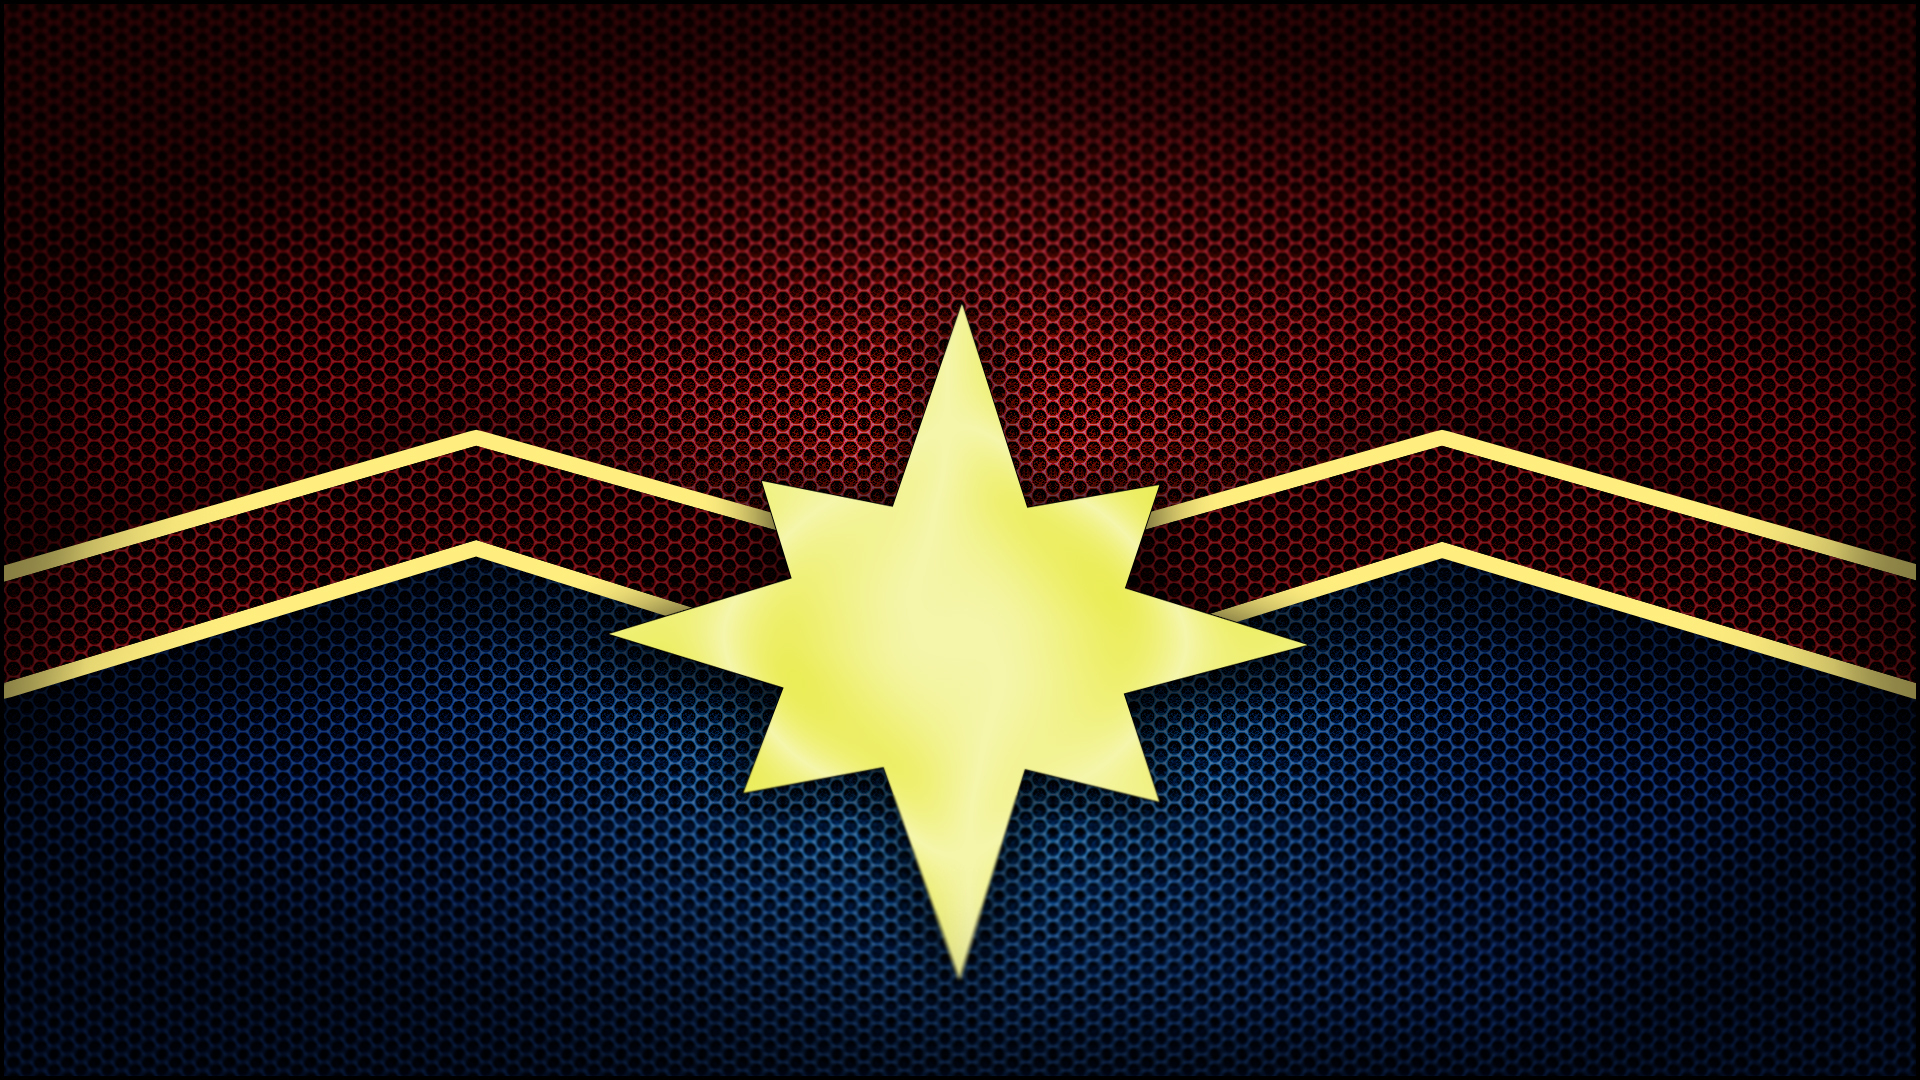 logo fonds d'écran full hd,jaune,conception,étoile,modèle,symétrie